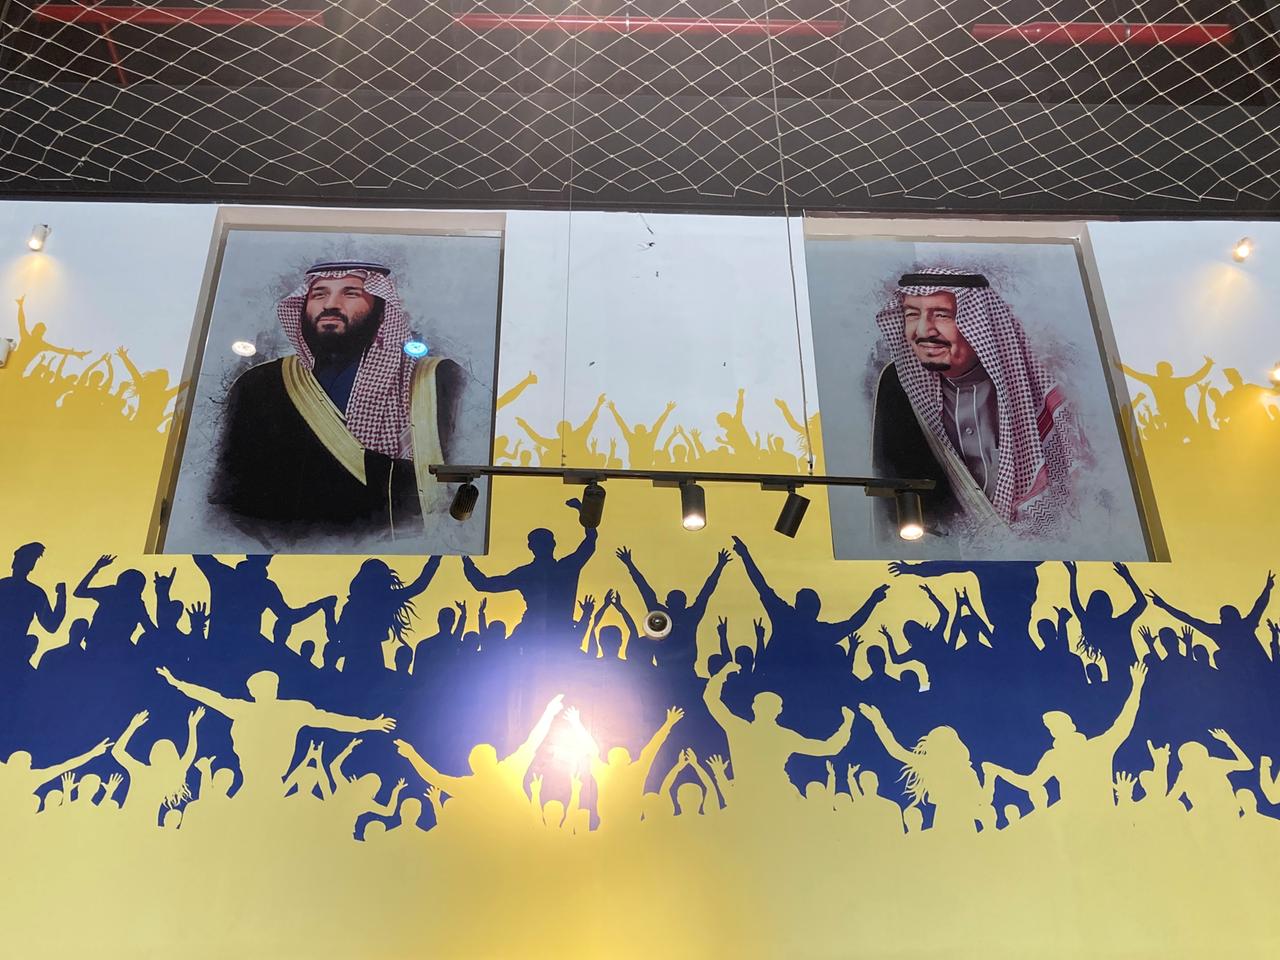 Wand mit Gesichtern der Monarchie in Saudi-Arabien